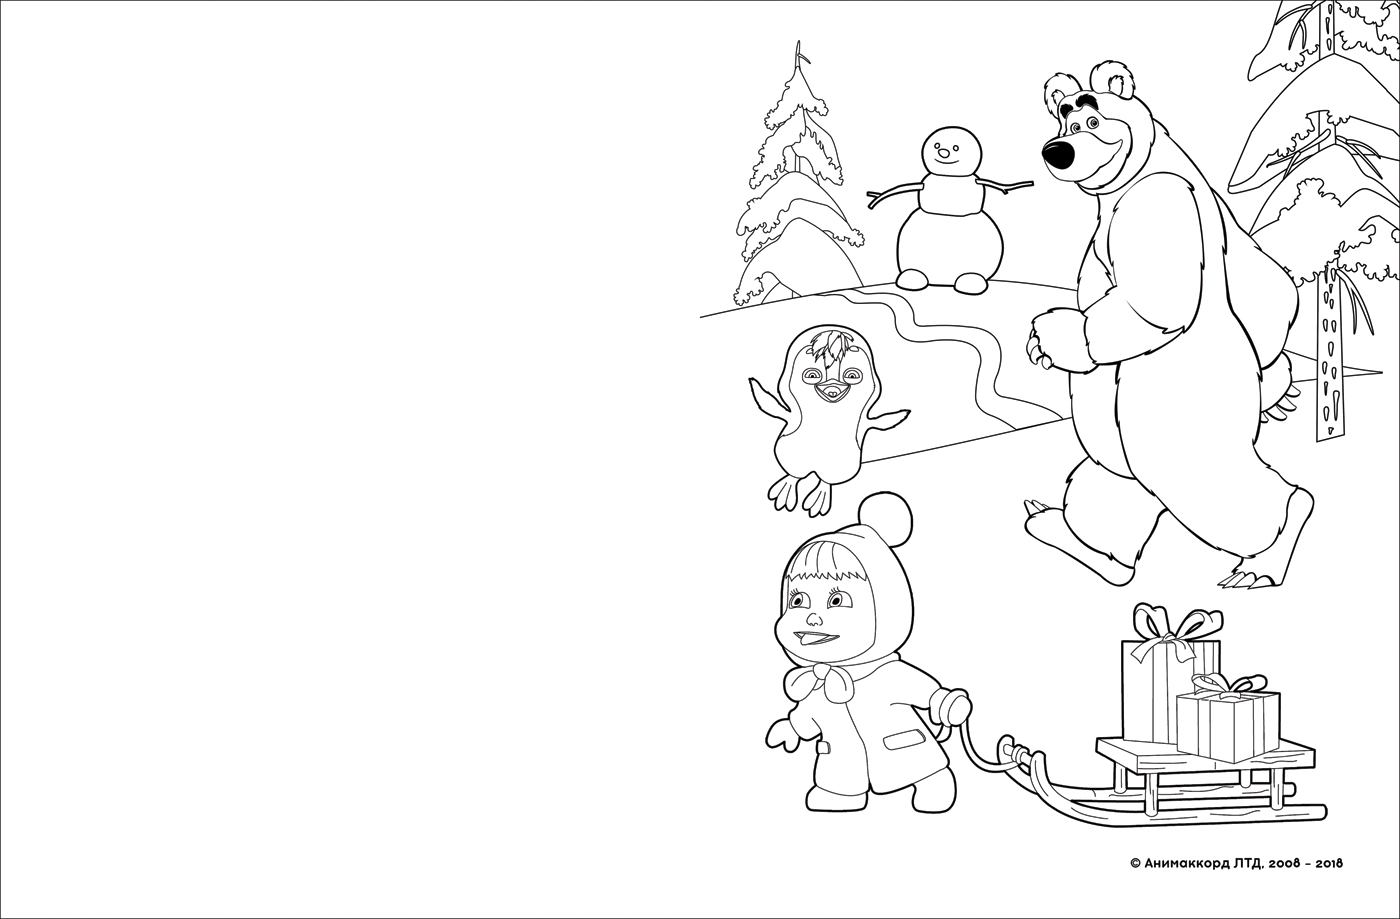 Альбом для рисования с образцами для раскрашивания из серии Маша и Медведь  